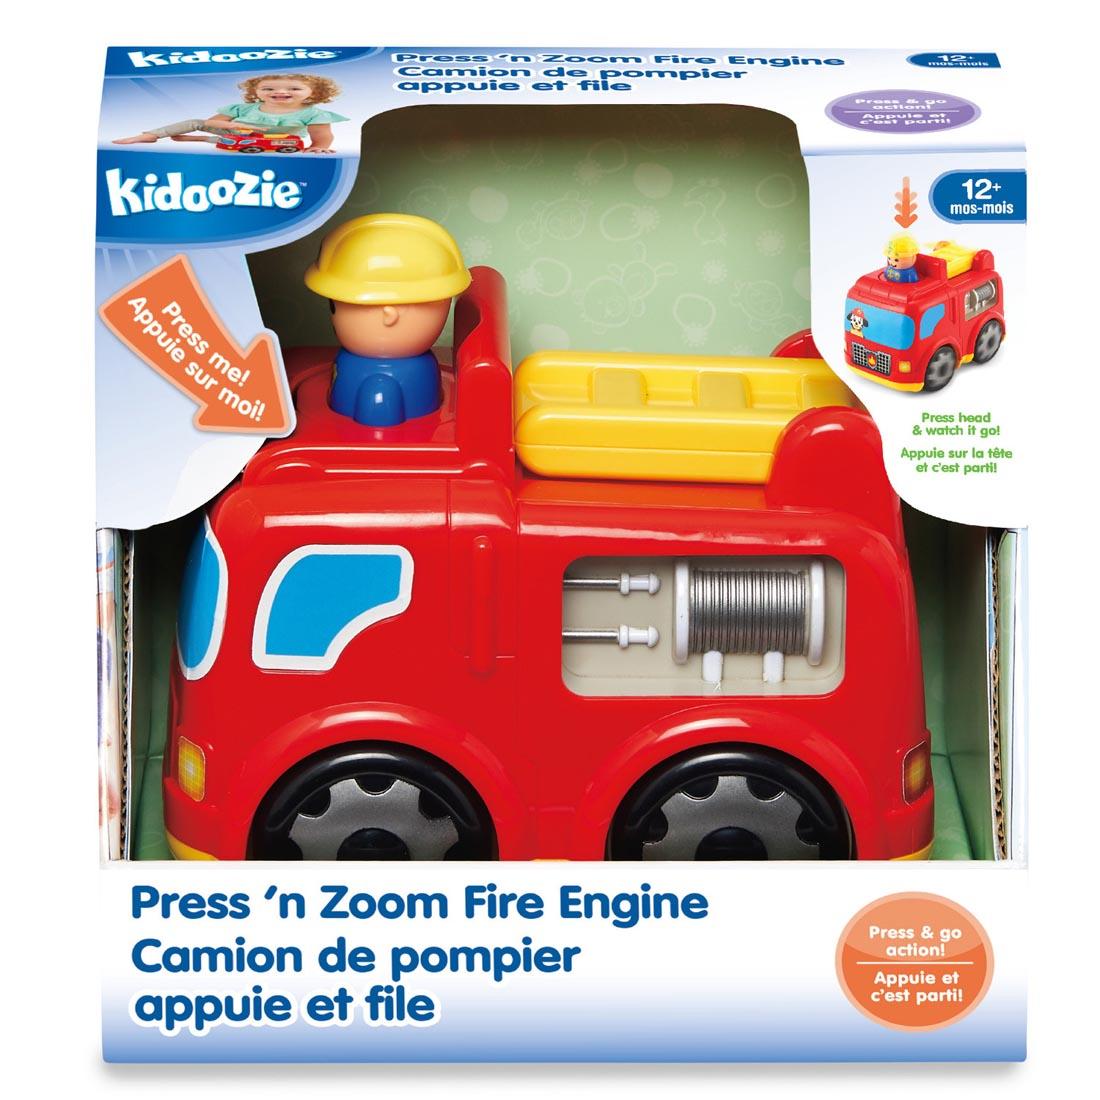 Kidoozie Press 'n Zoom Fire Engine